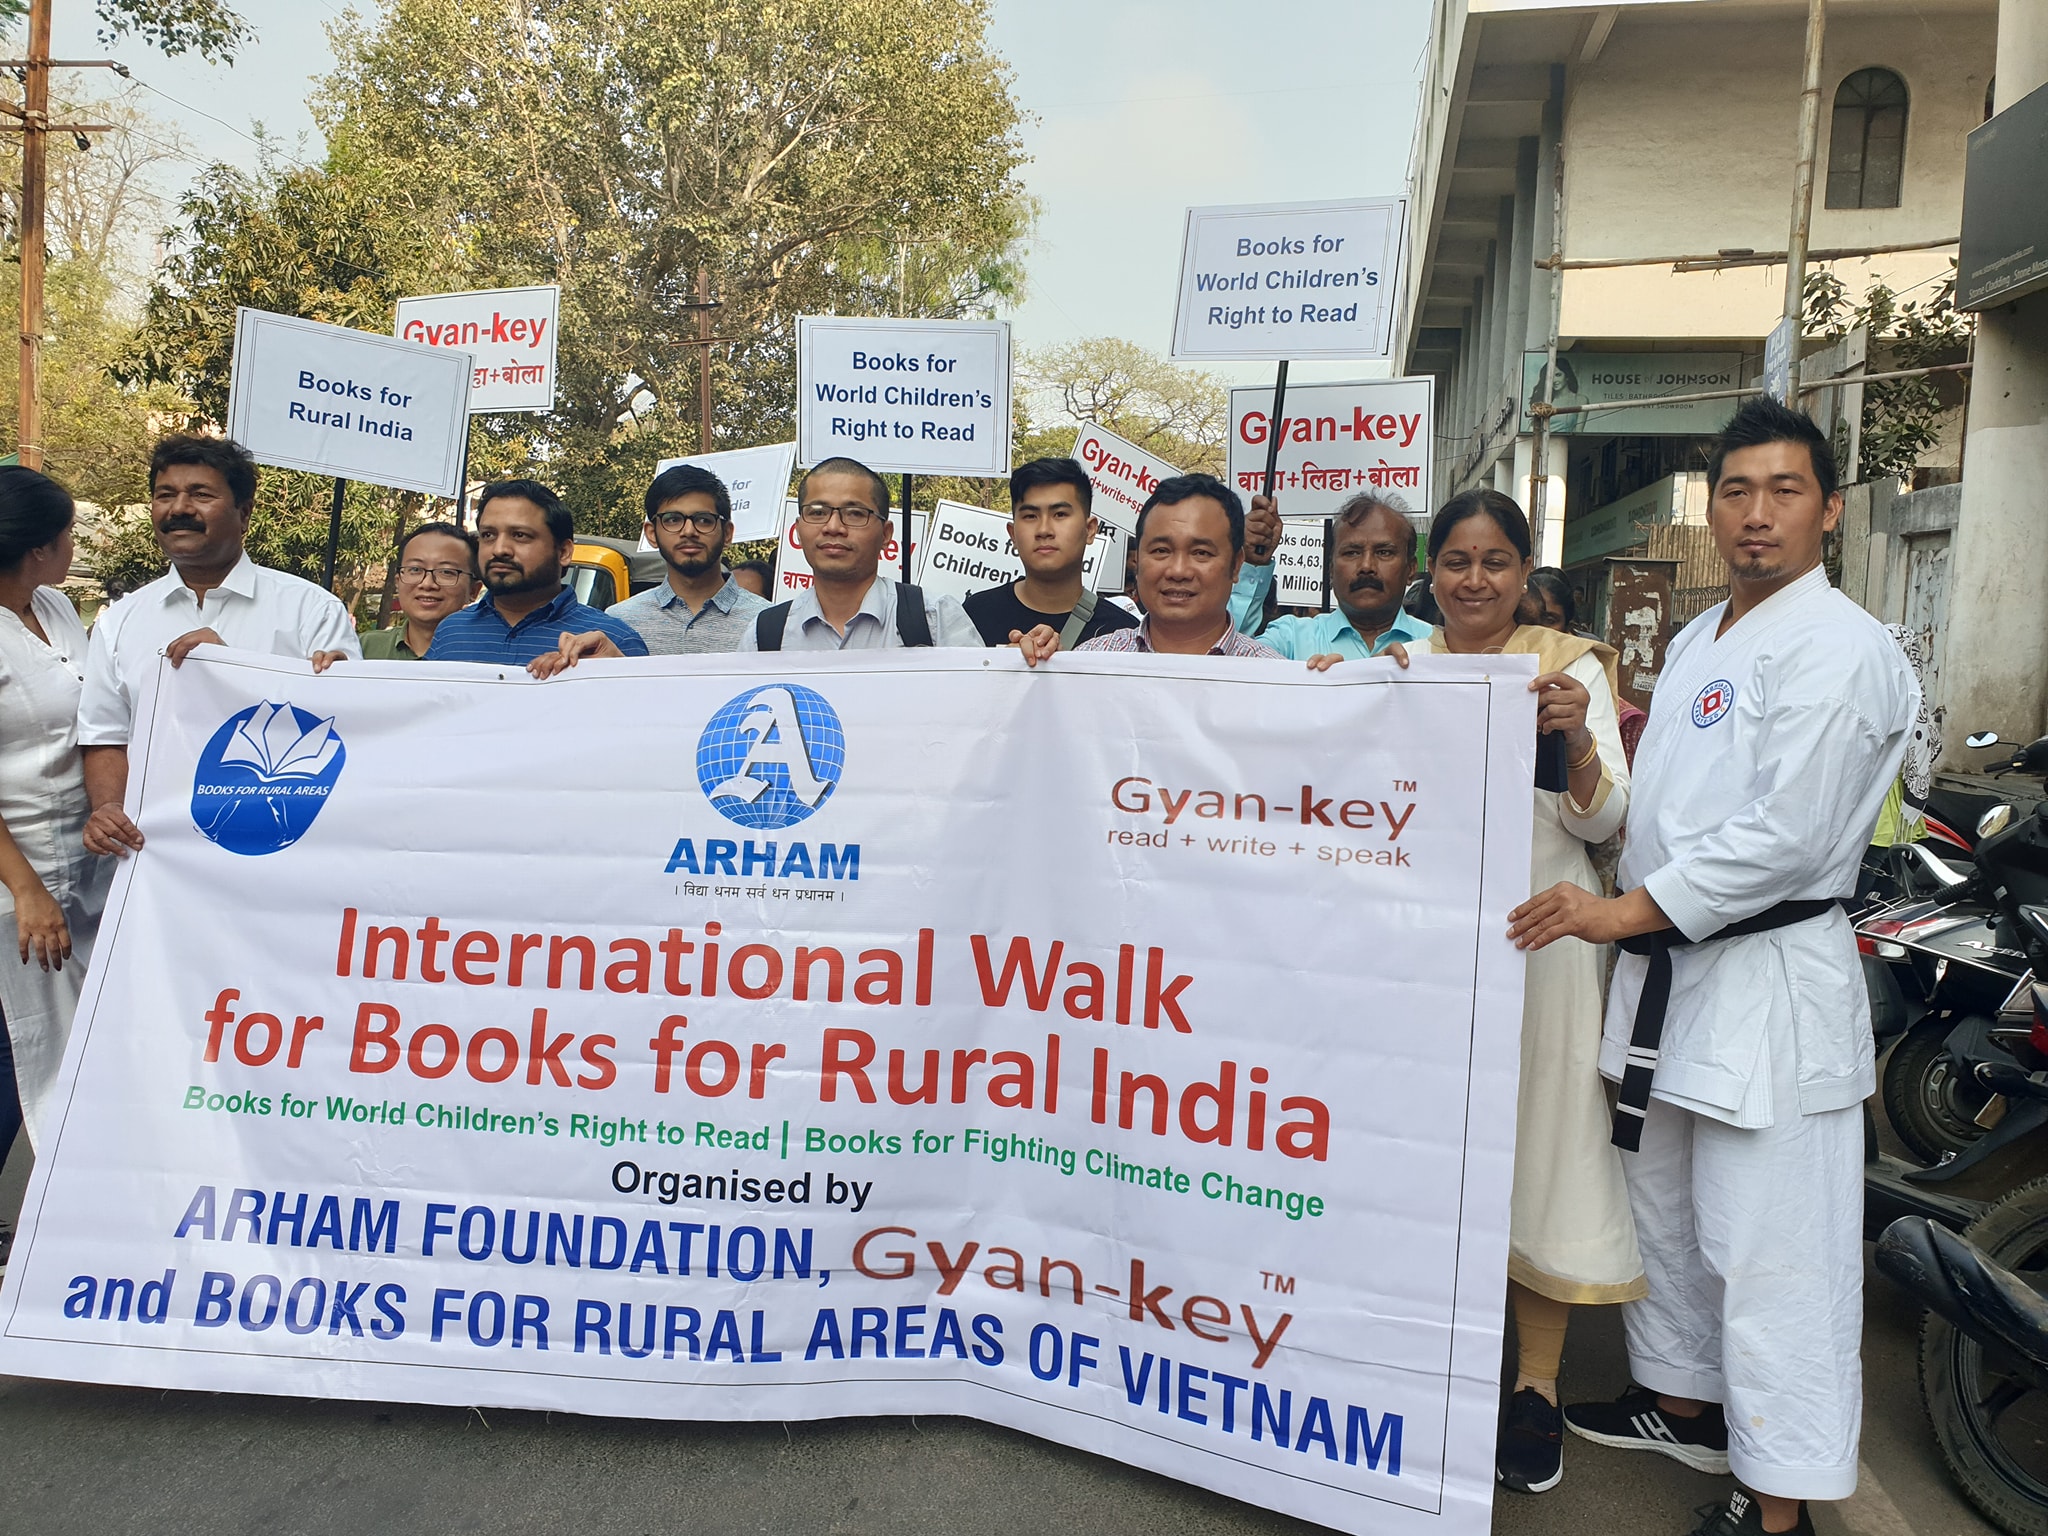 Chuyến đi bộ do anh Nguyễn Quang Thạch khởi xướng nhằm thúc đẩy quyền đọc sách cho trẻ em toàn cầu.